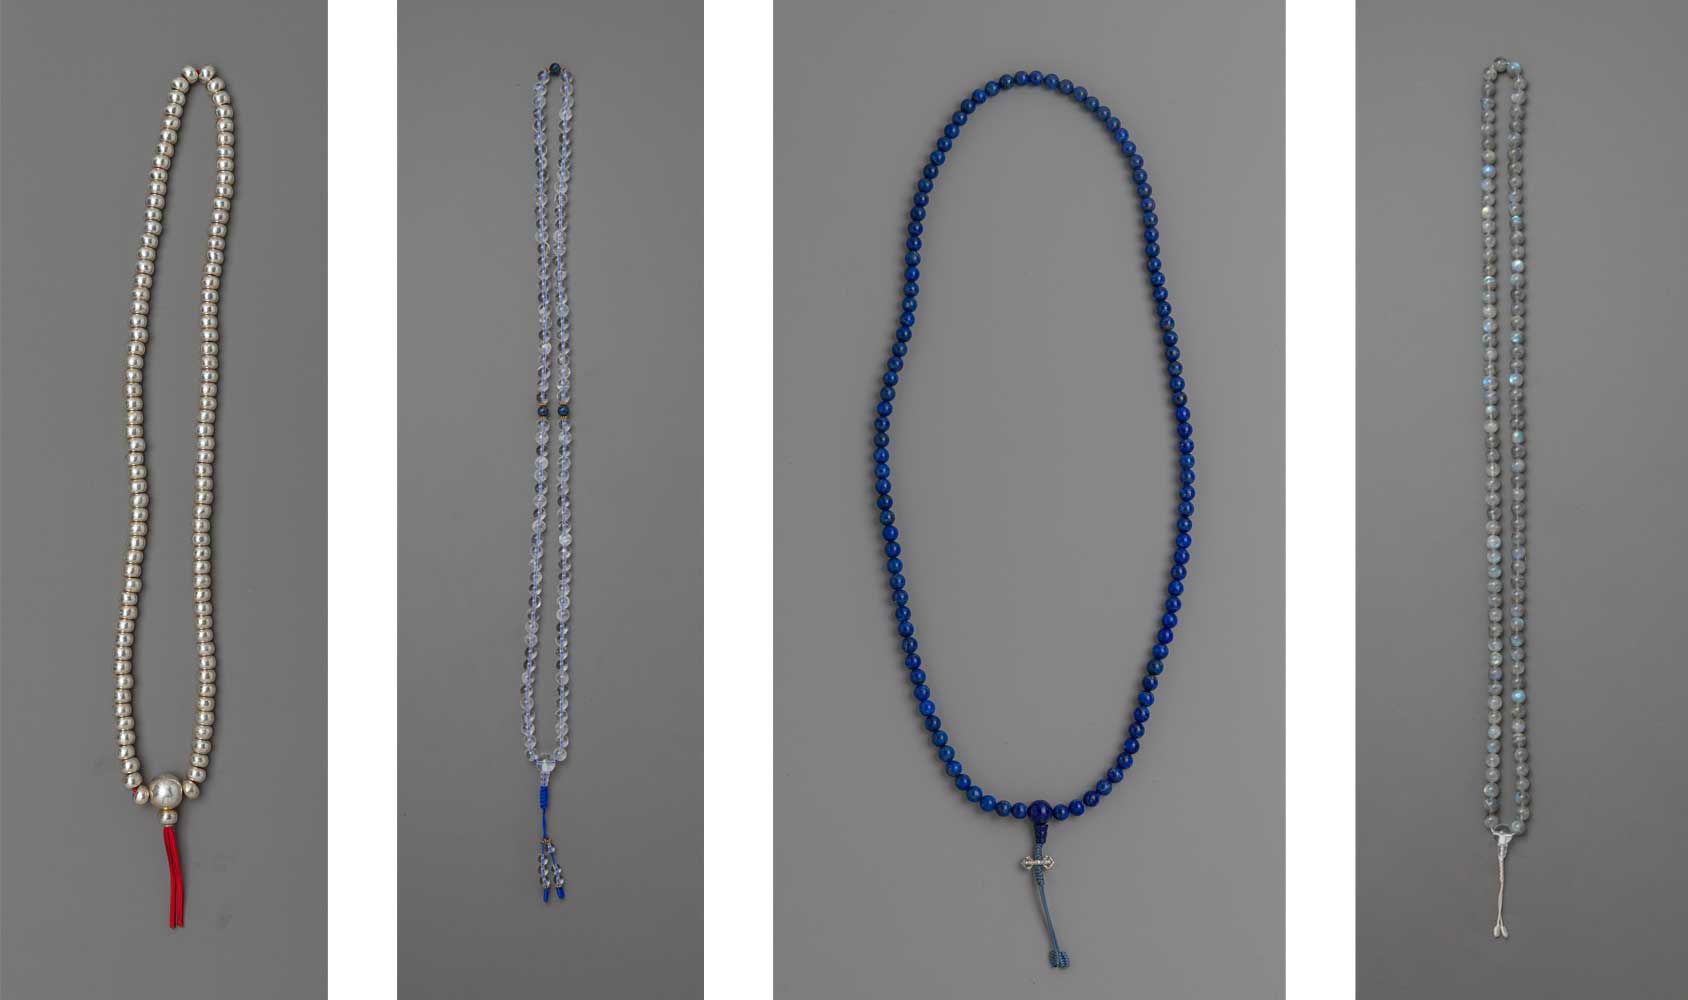 buddhist mala beads